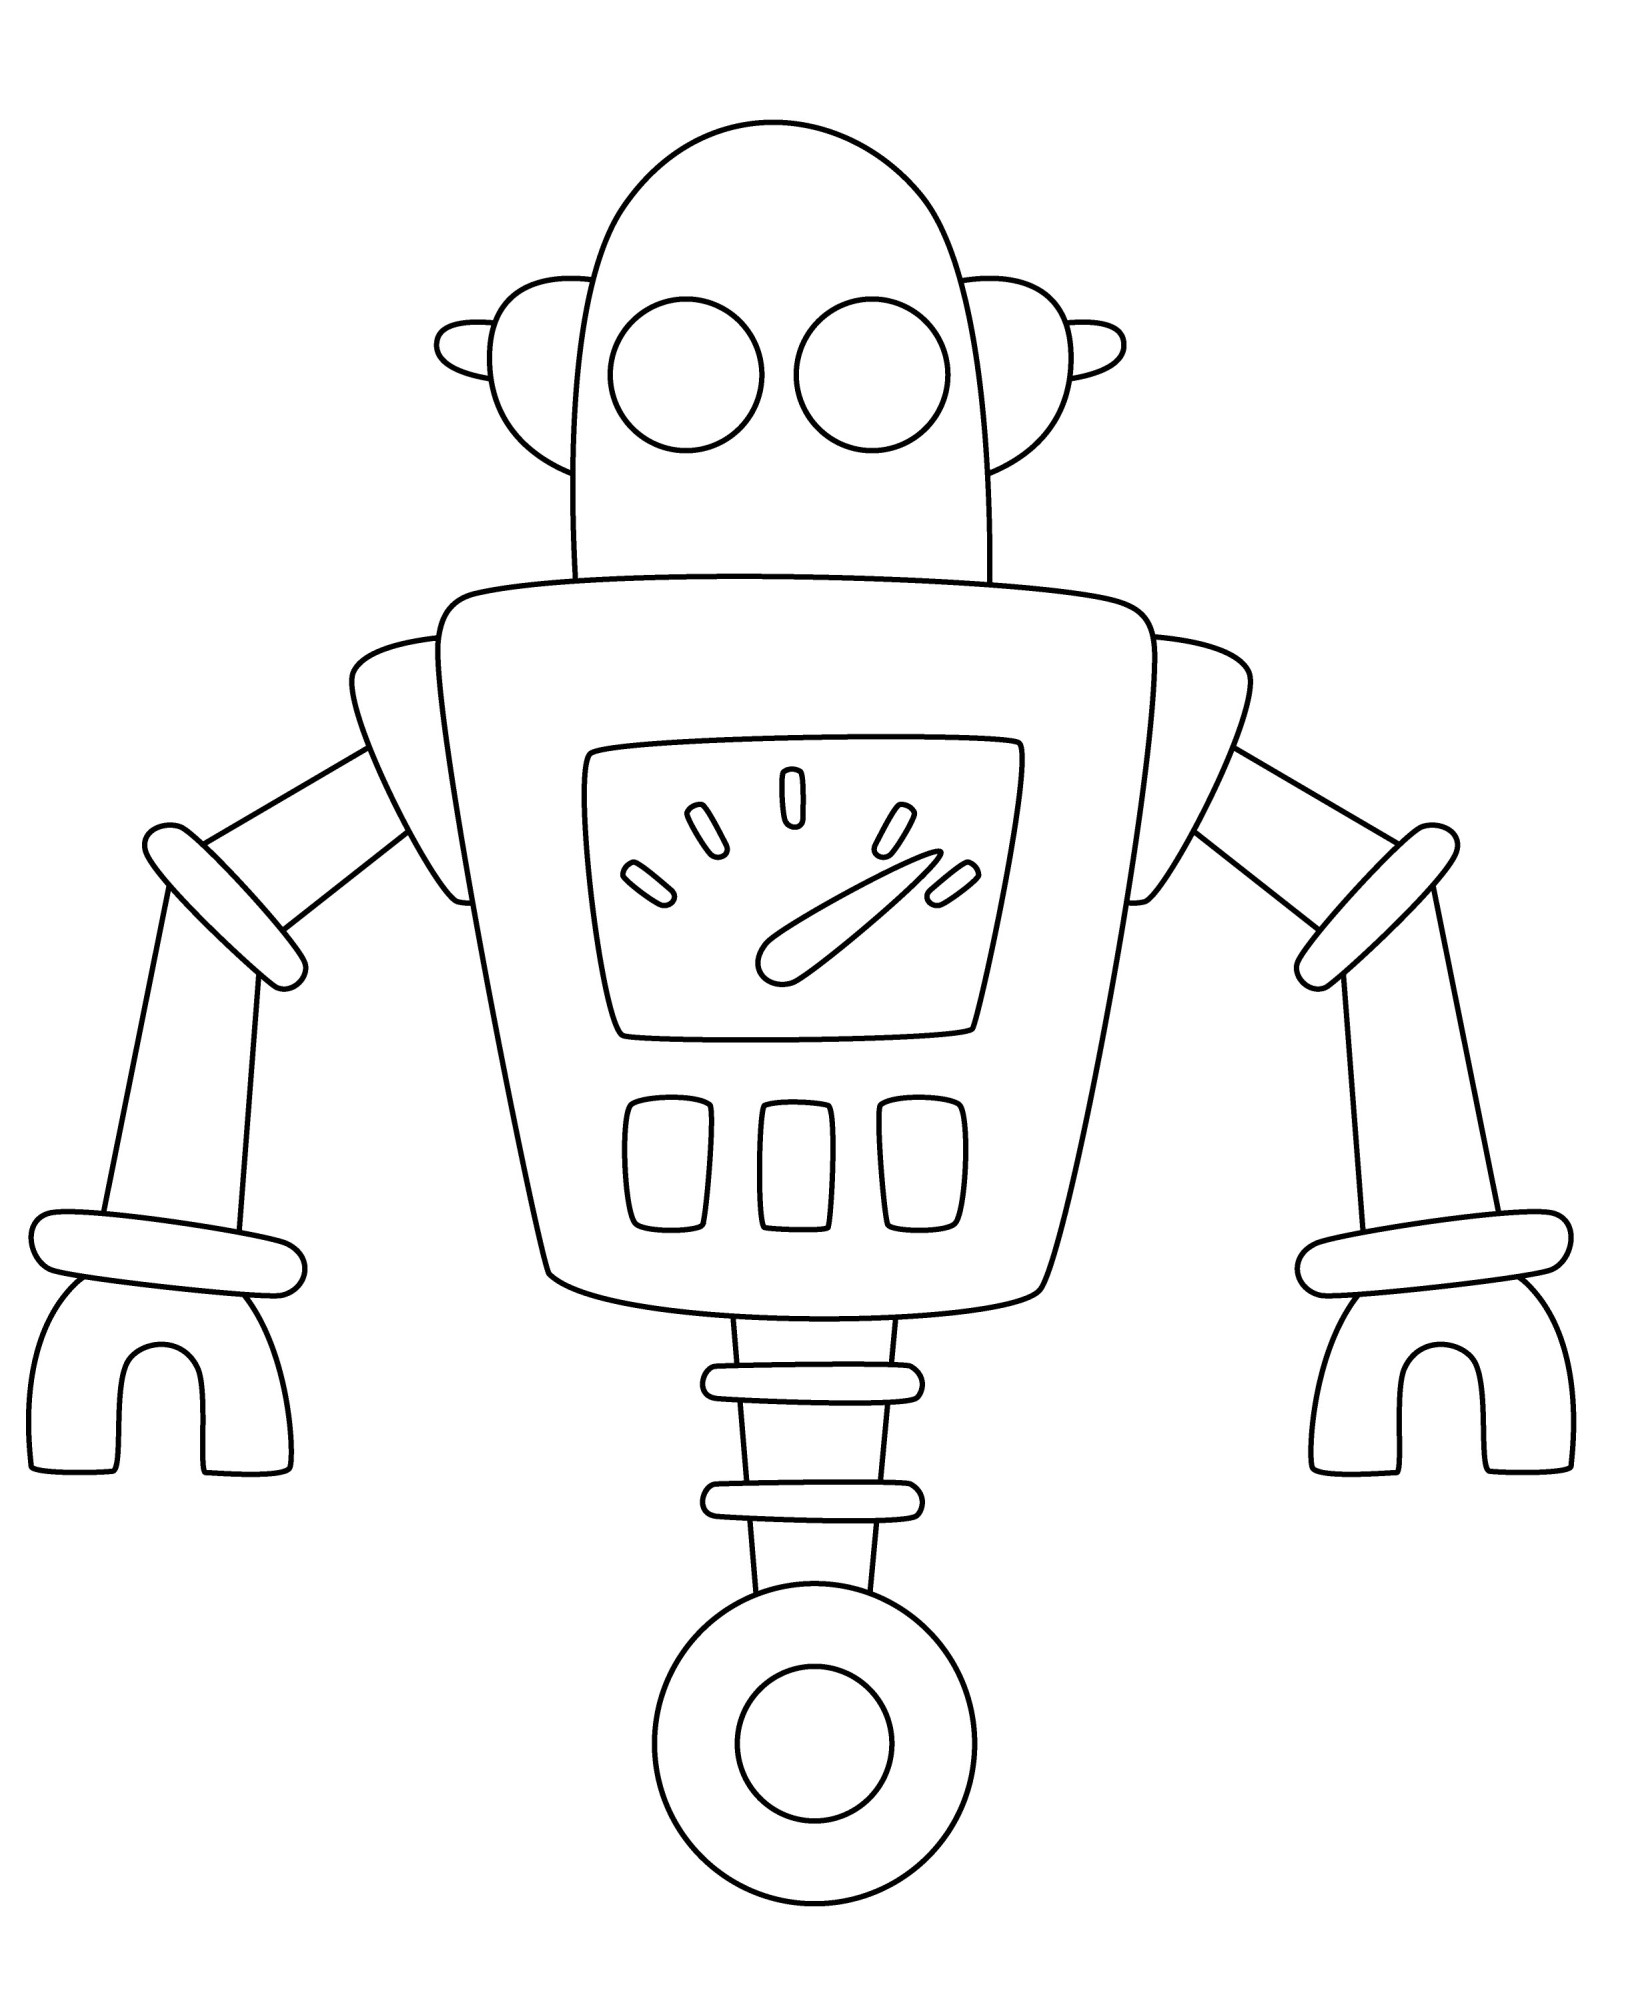 Раскраска для детей: ретро робот с колесом и клешнями